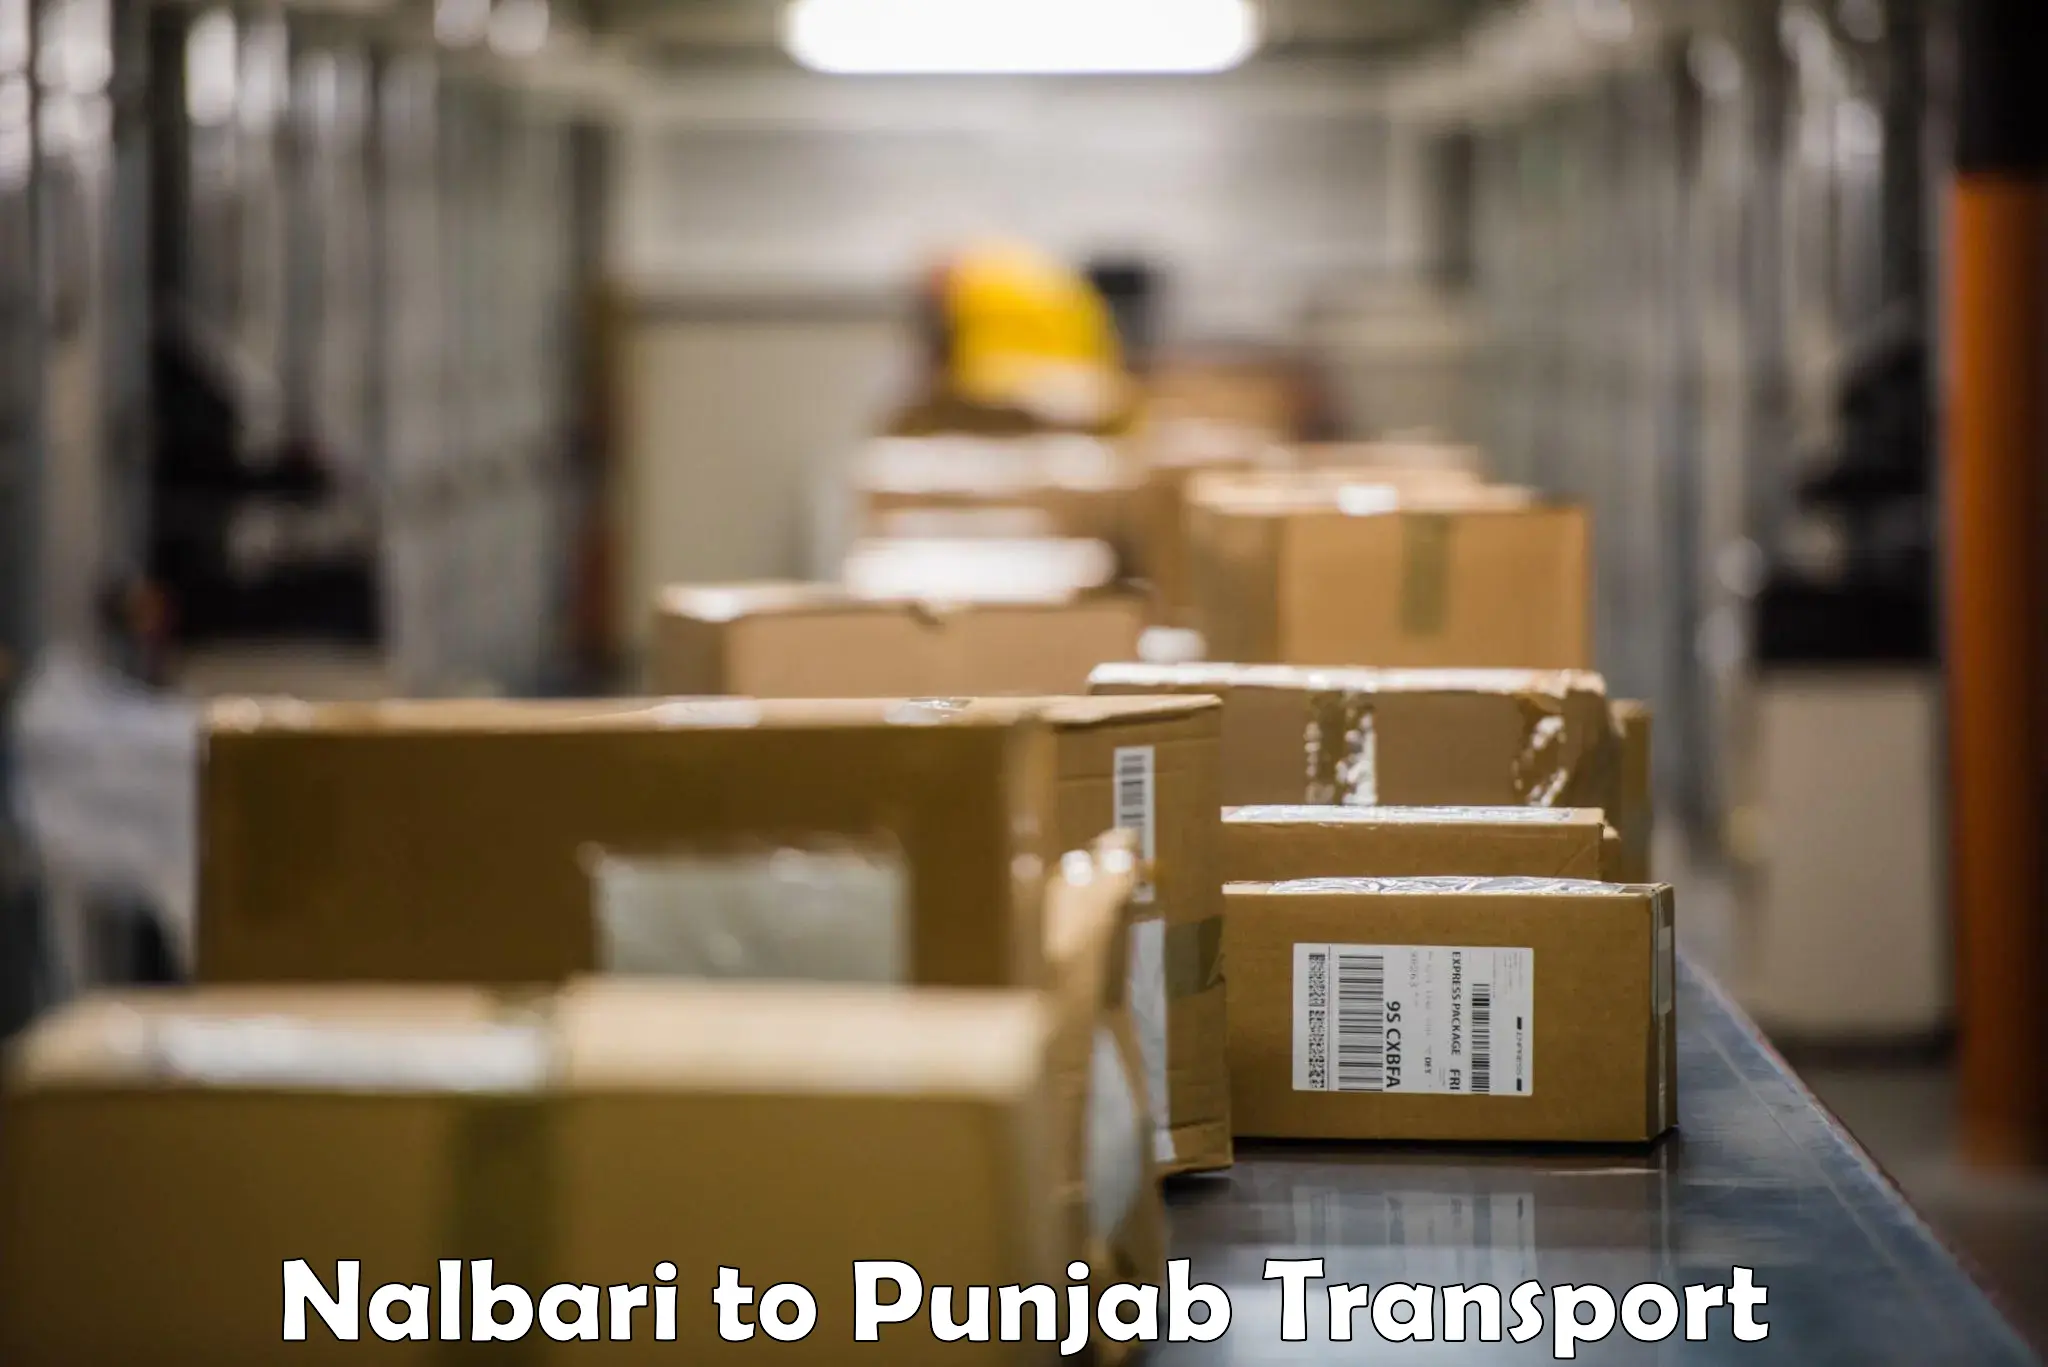 Furniture transport service Nalbari to Talwandi Sabo